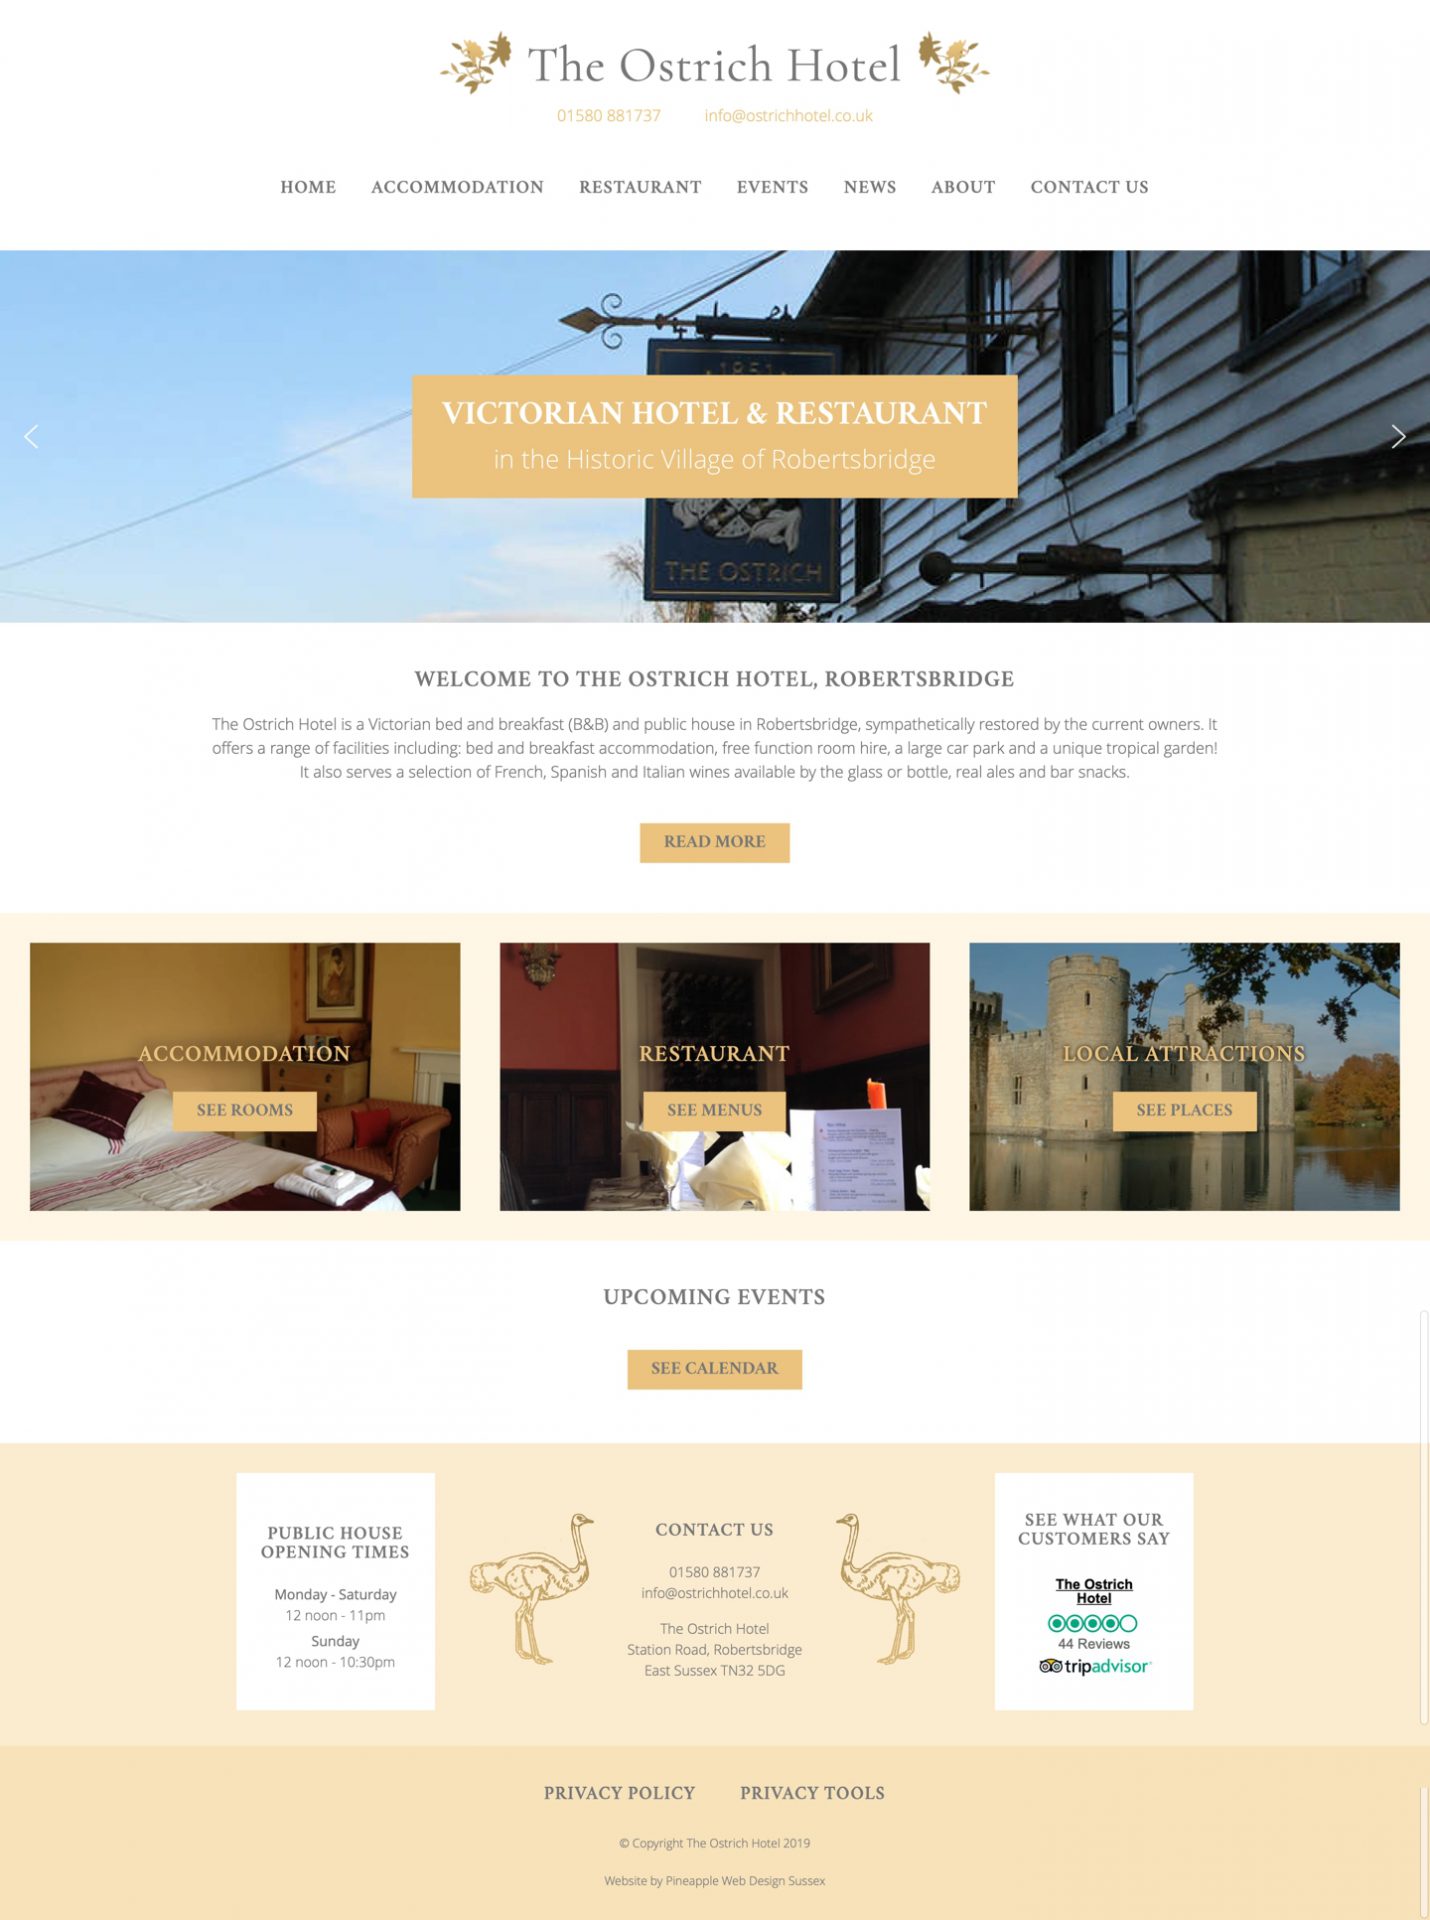 The Ostrich Hotel Website Design & Development Sussex